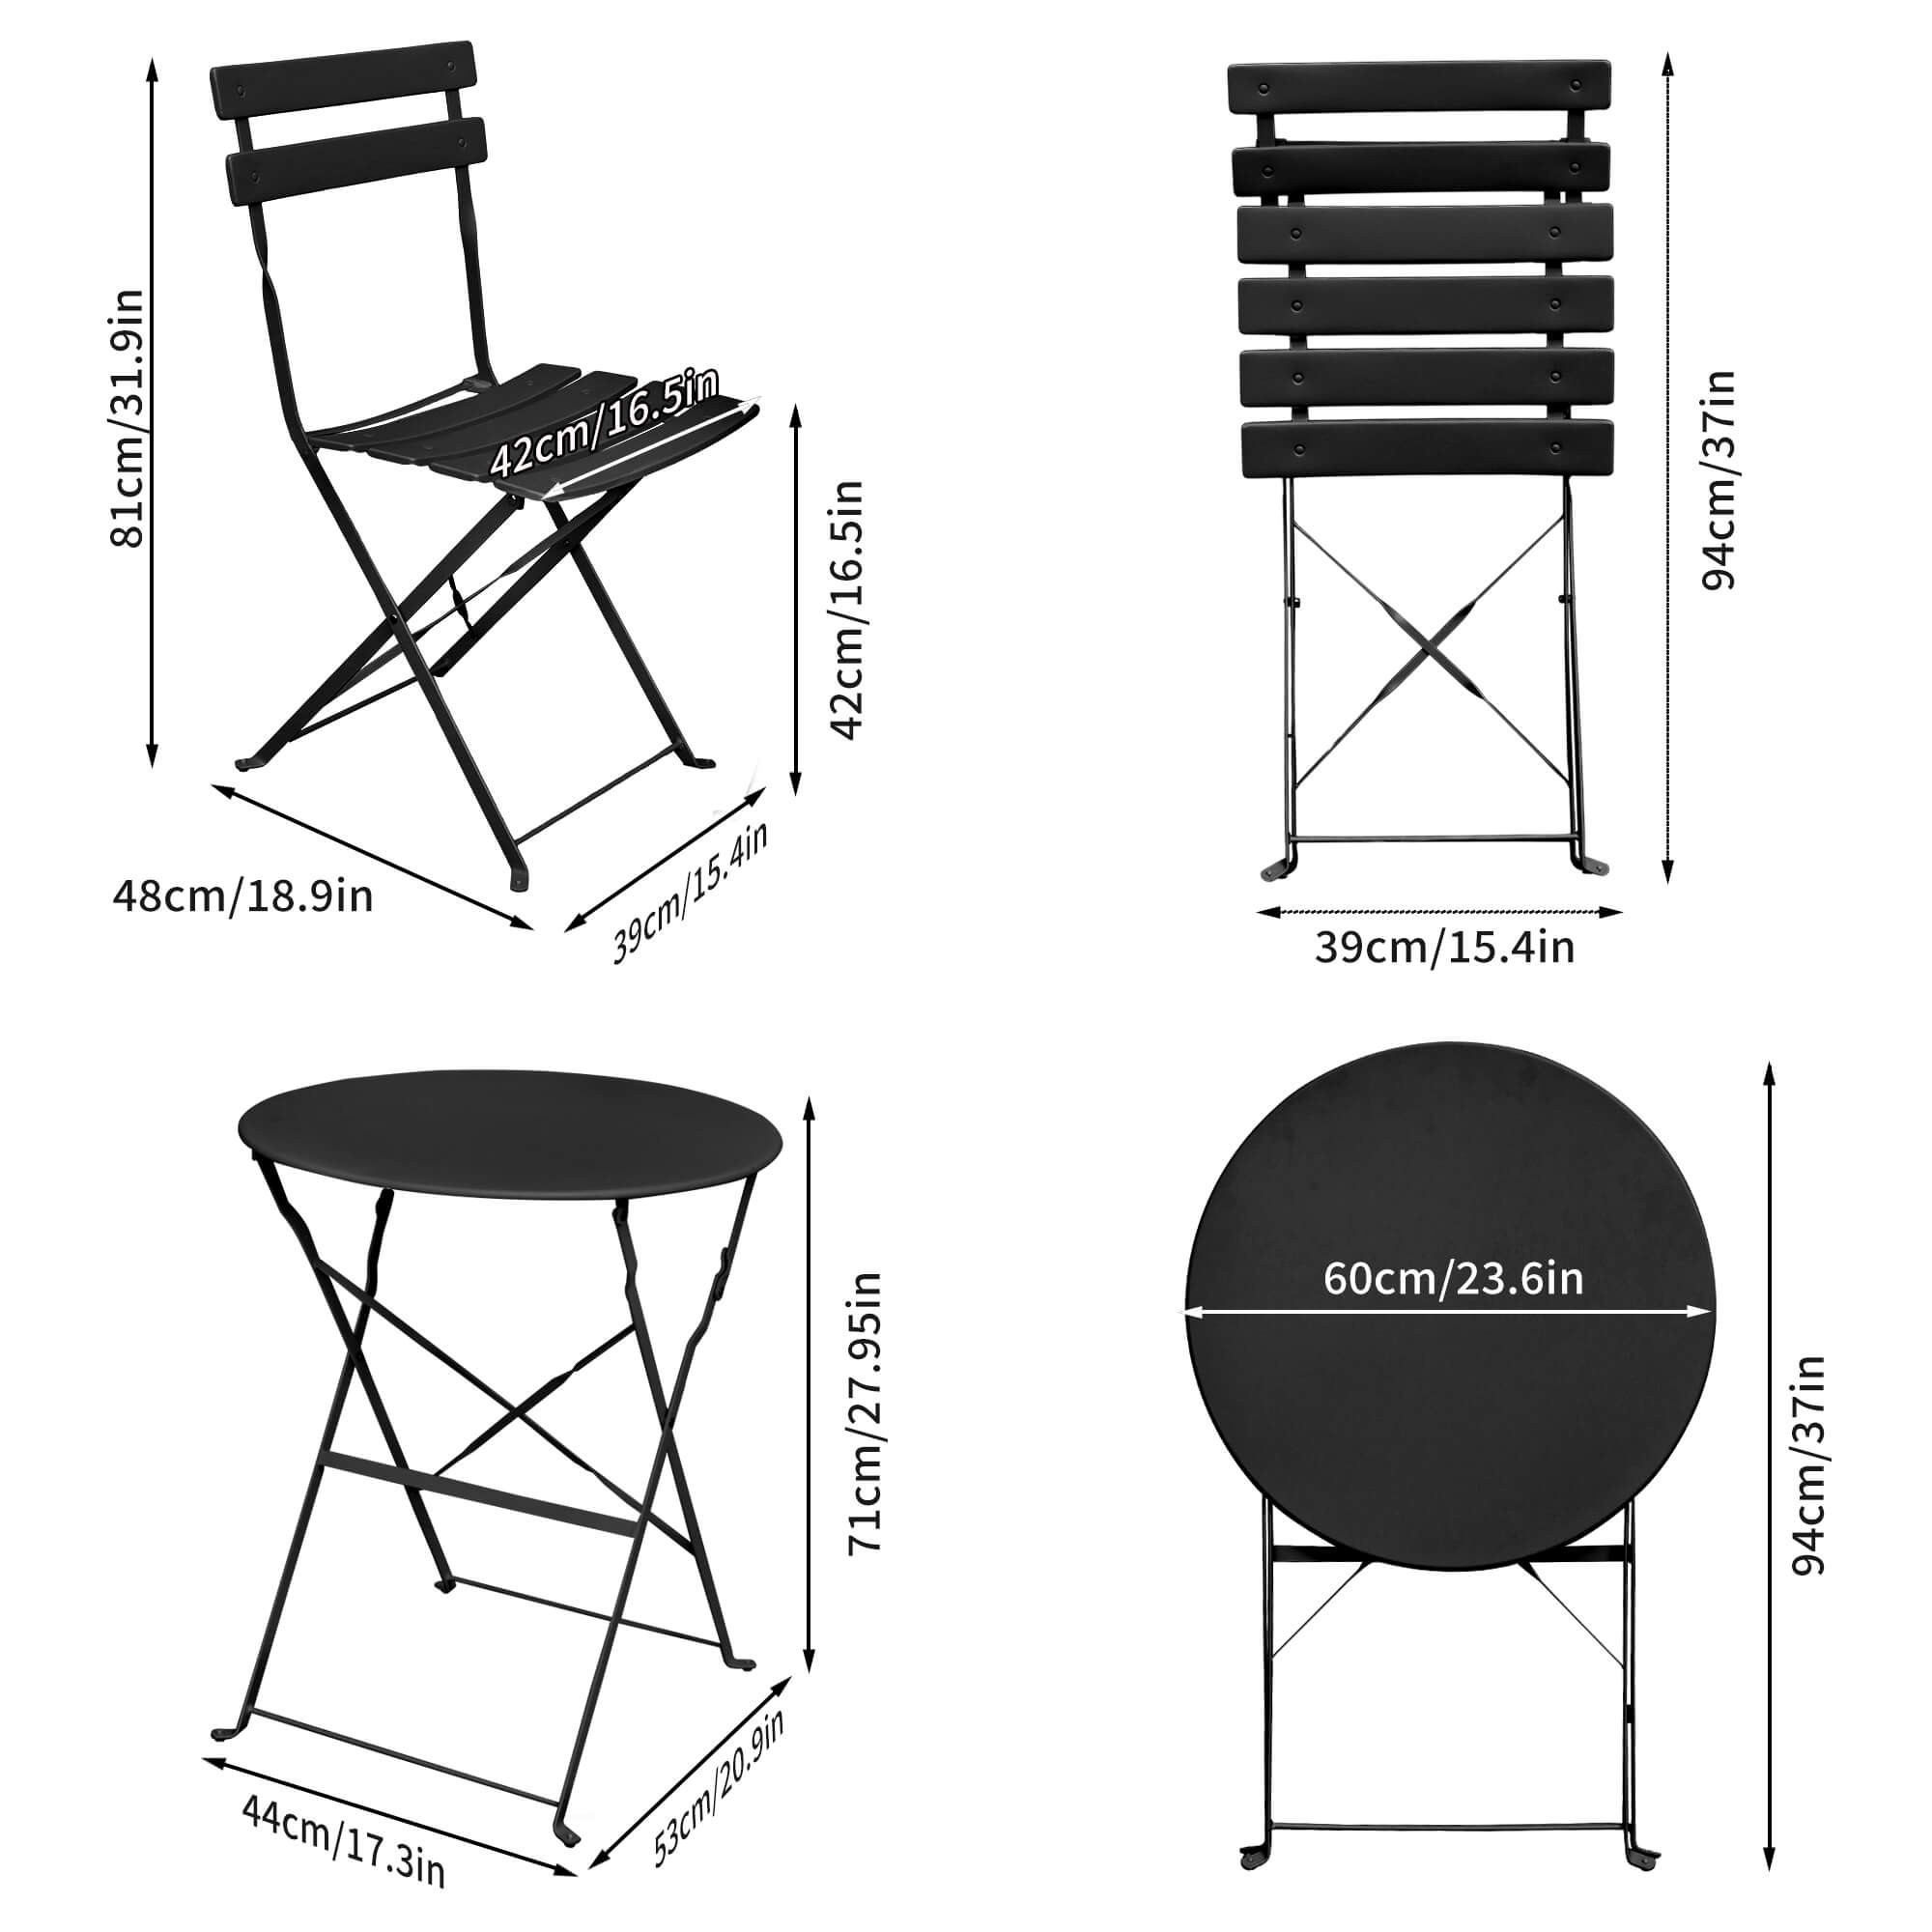 Wymiary 3D - Zestaw mebli balkonowych ORION Okrągły stół i 2 krzesła w eleganckiej czerni - AKORD Fabryka Mebli